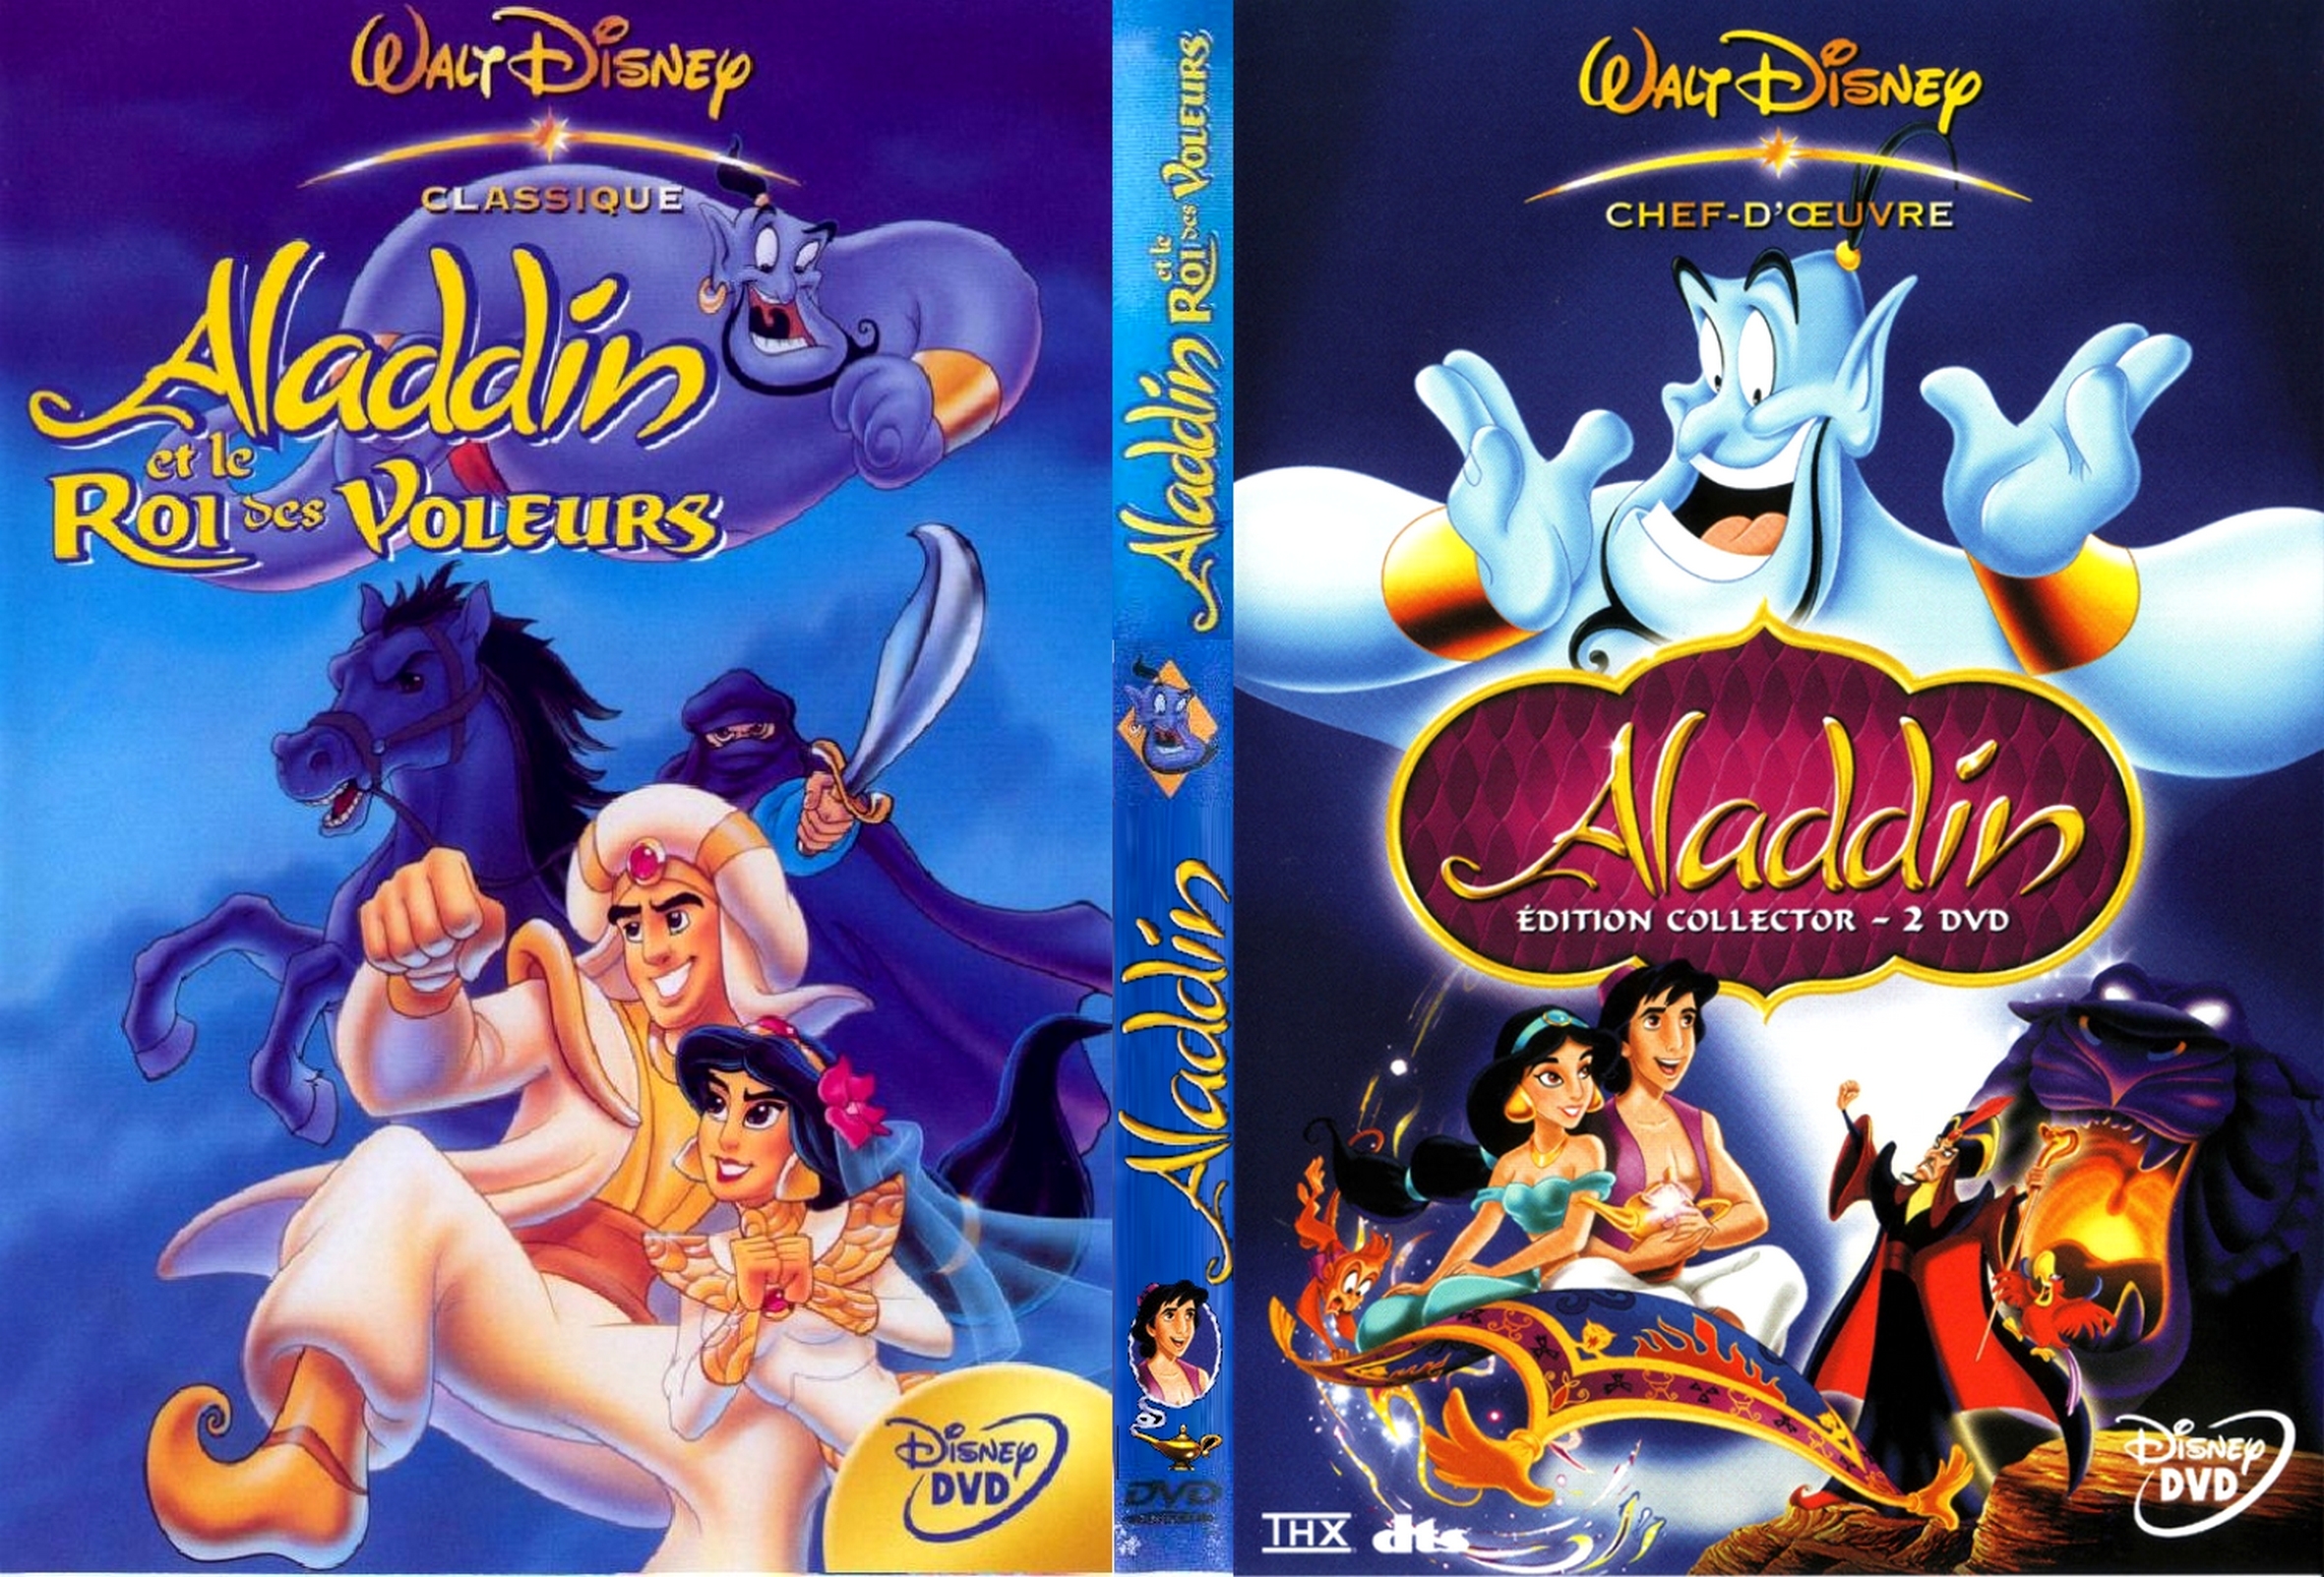 Jaquette DVD Aladdin + Aladdin et le roi des voleurs